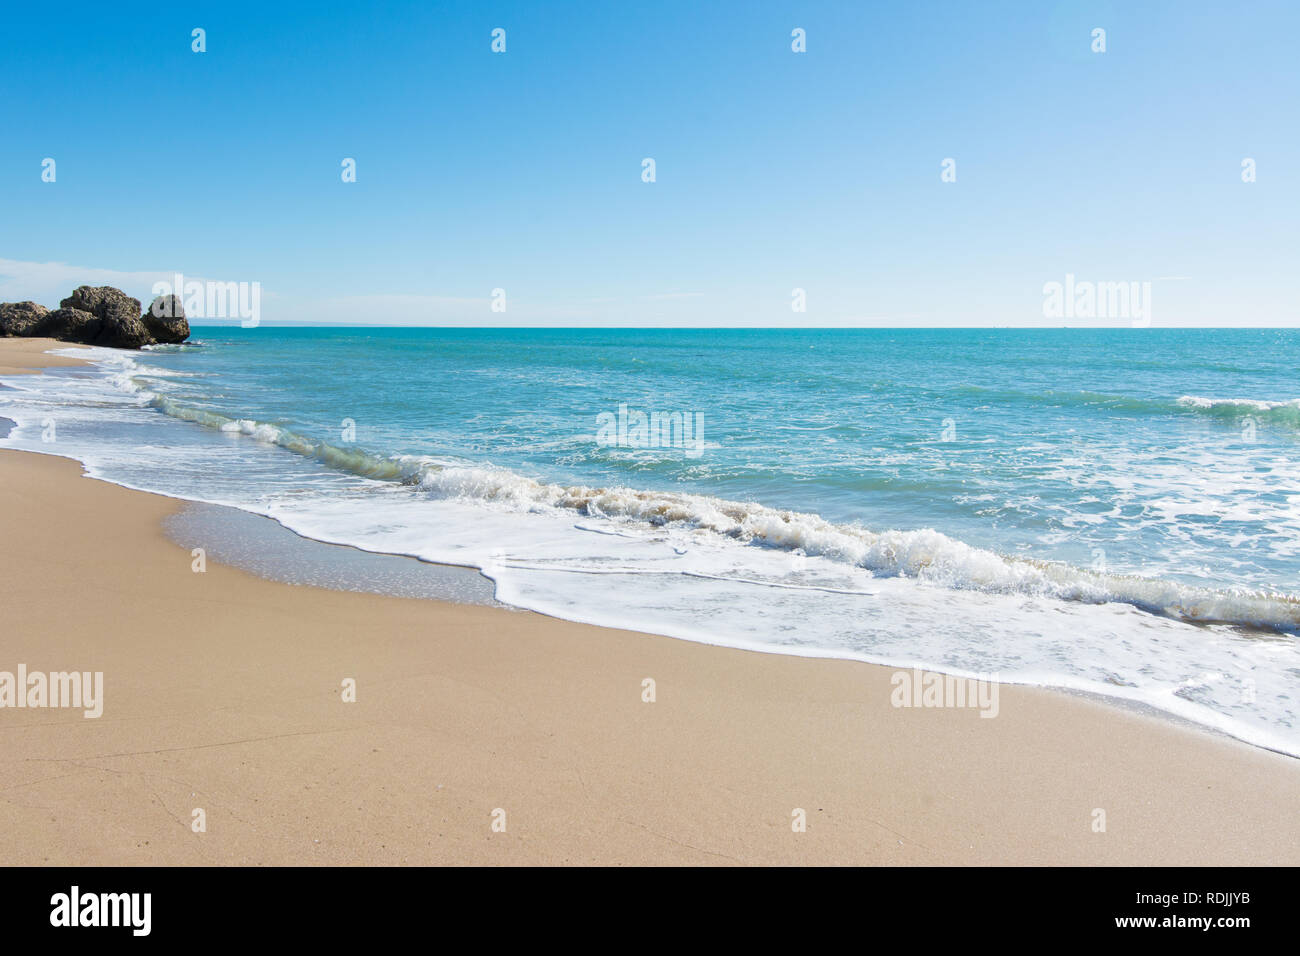 Wellen, Meer und Sonne am Strand in Sizilien - Hintergrund Stockfoto